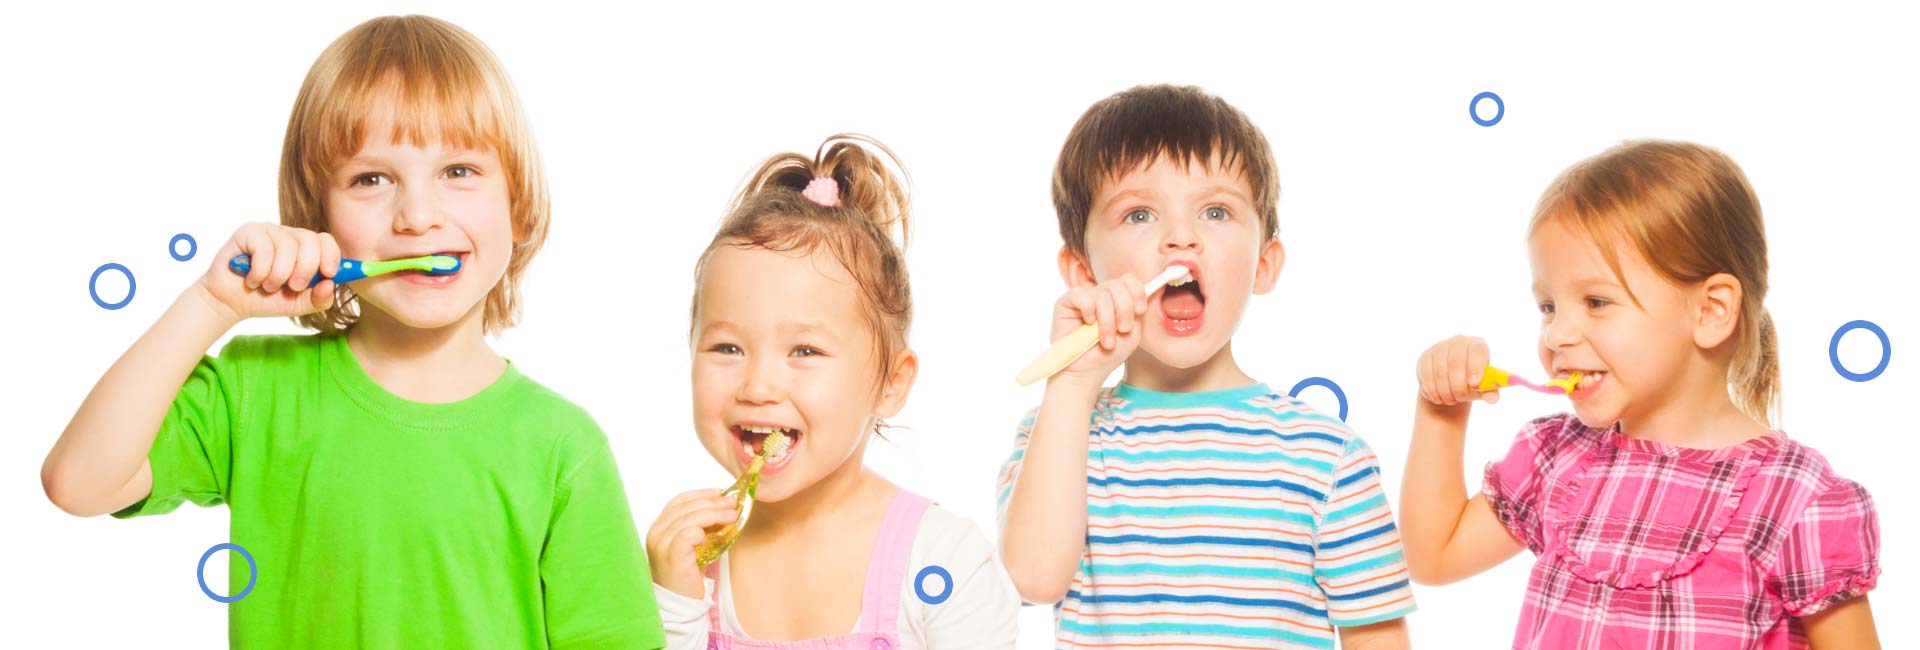 four kids brushing their teeth